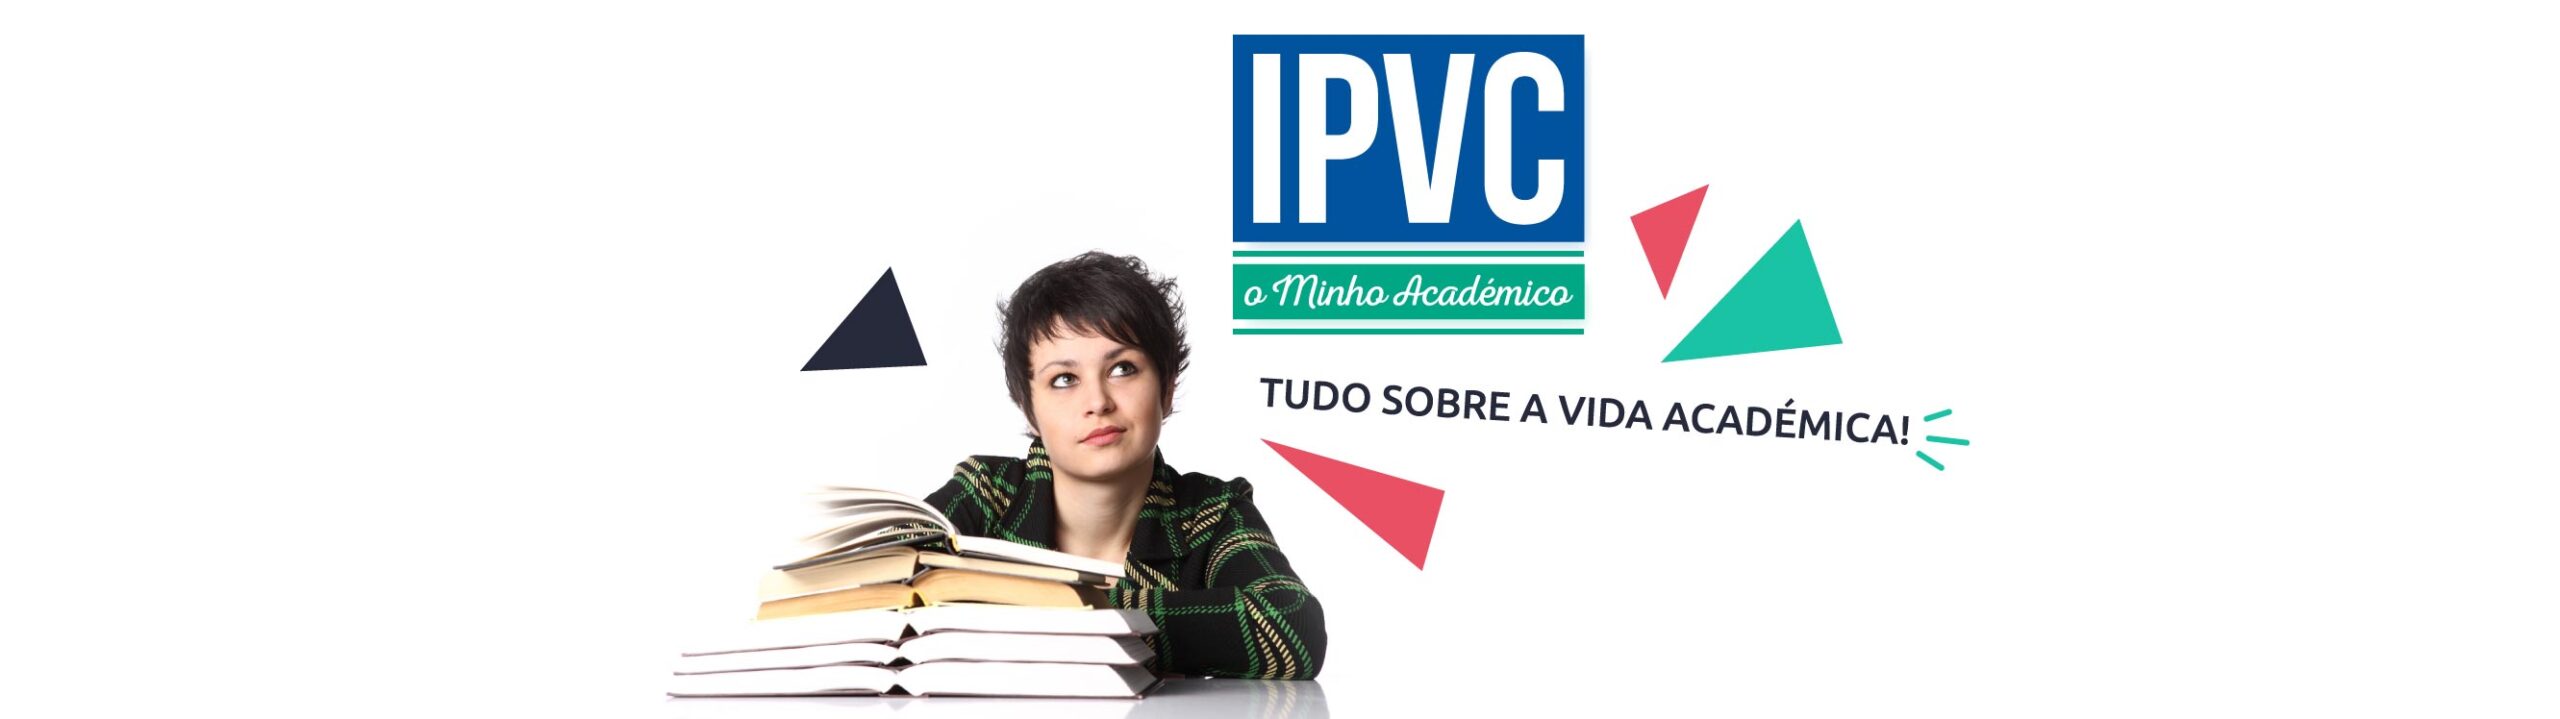 IPVC – O Minho Académico (Ed. 033)